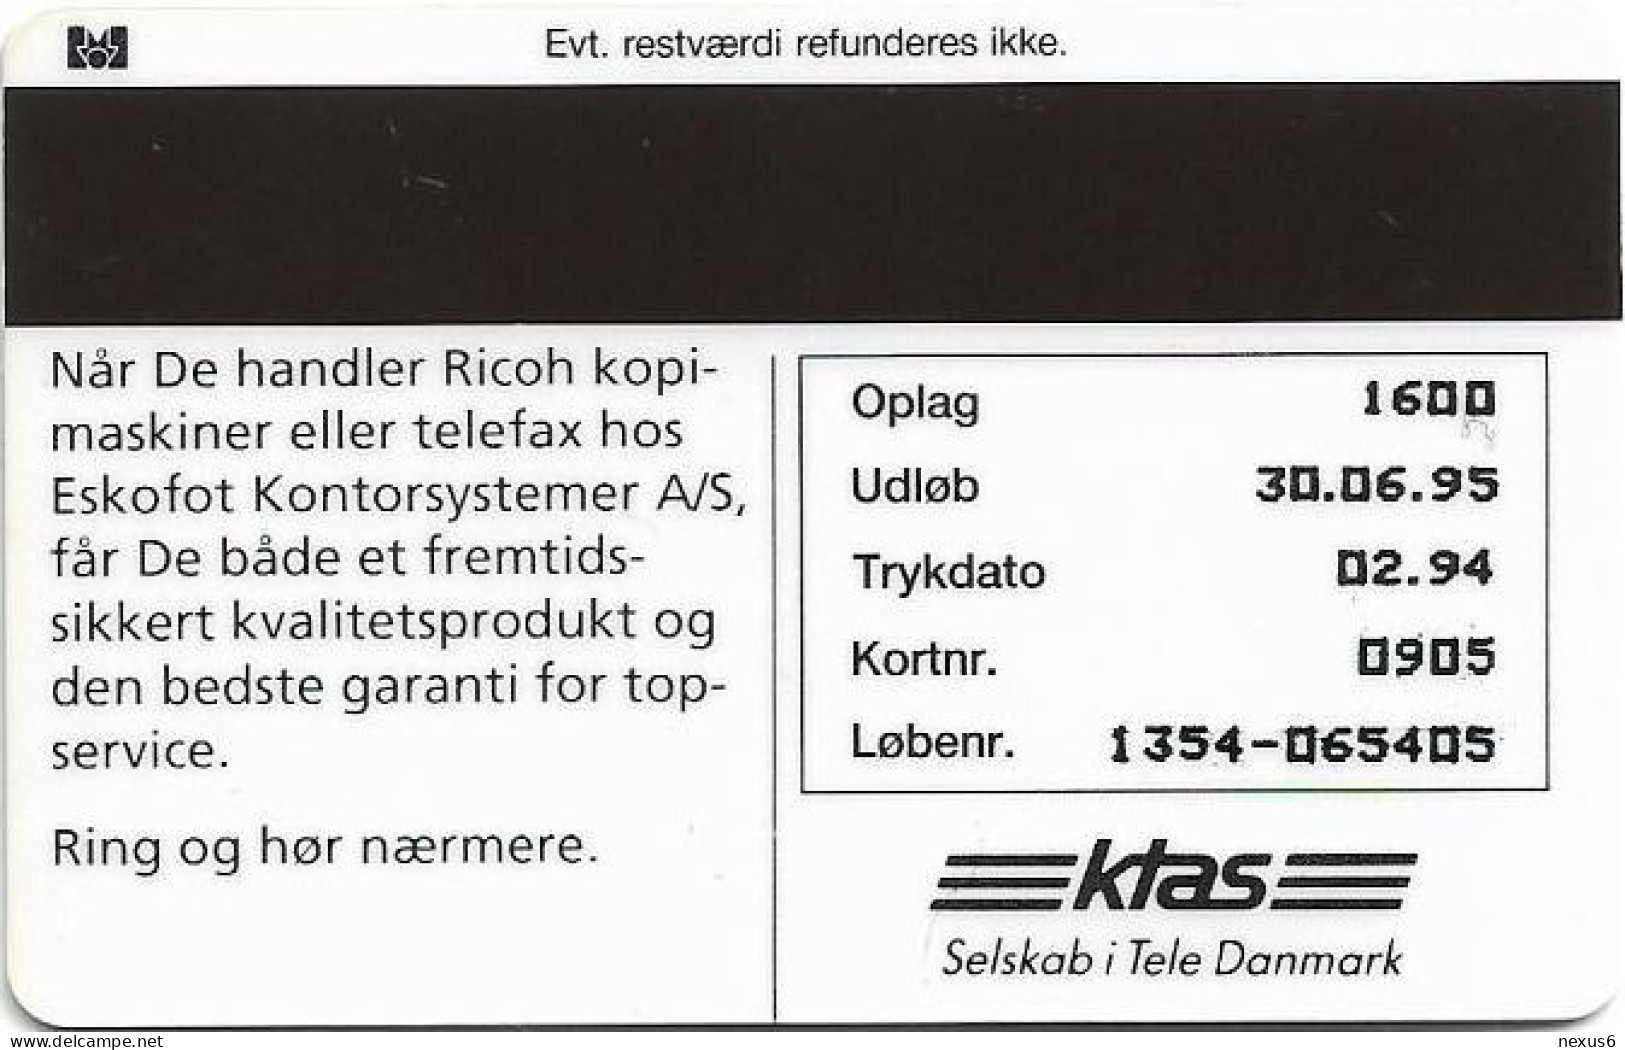 Denmark - KTAS - Eskofot 4497 4497 - TDKP066 - 02.1994, 5kr, 1.600ex, Used - Dänemark